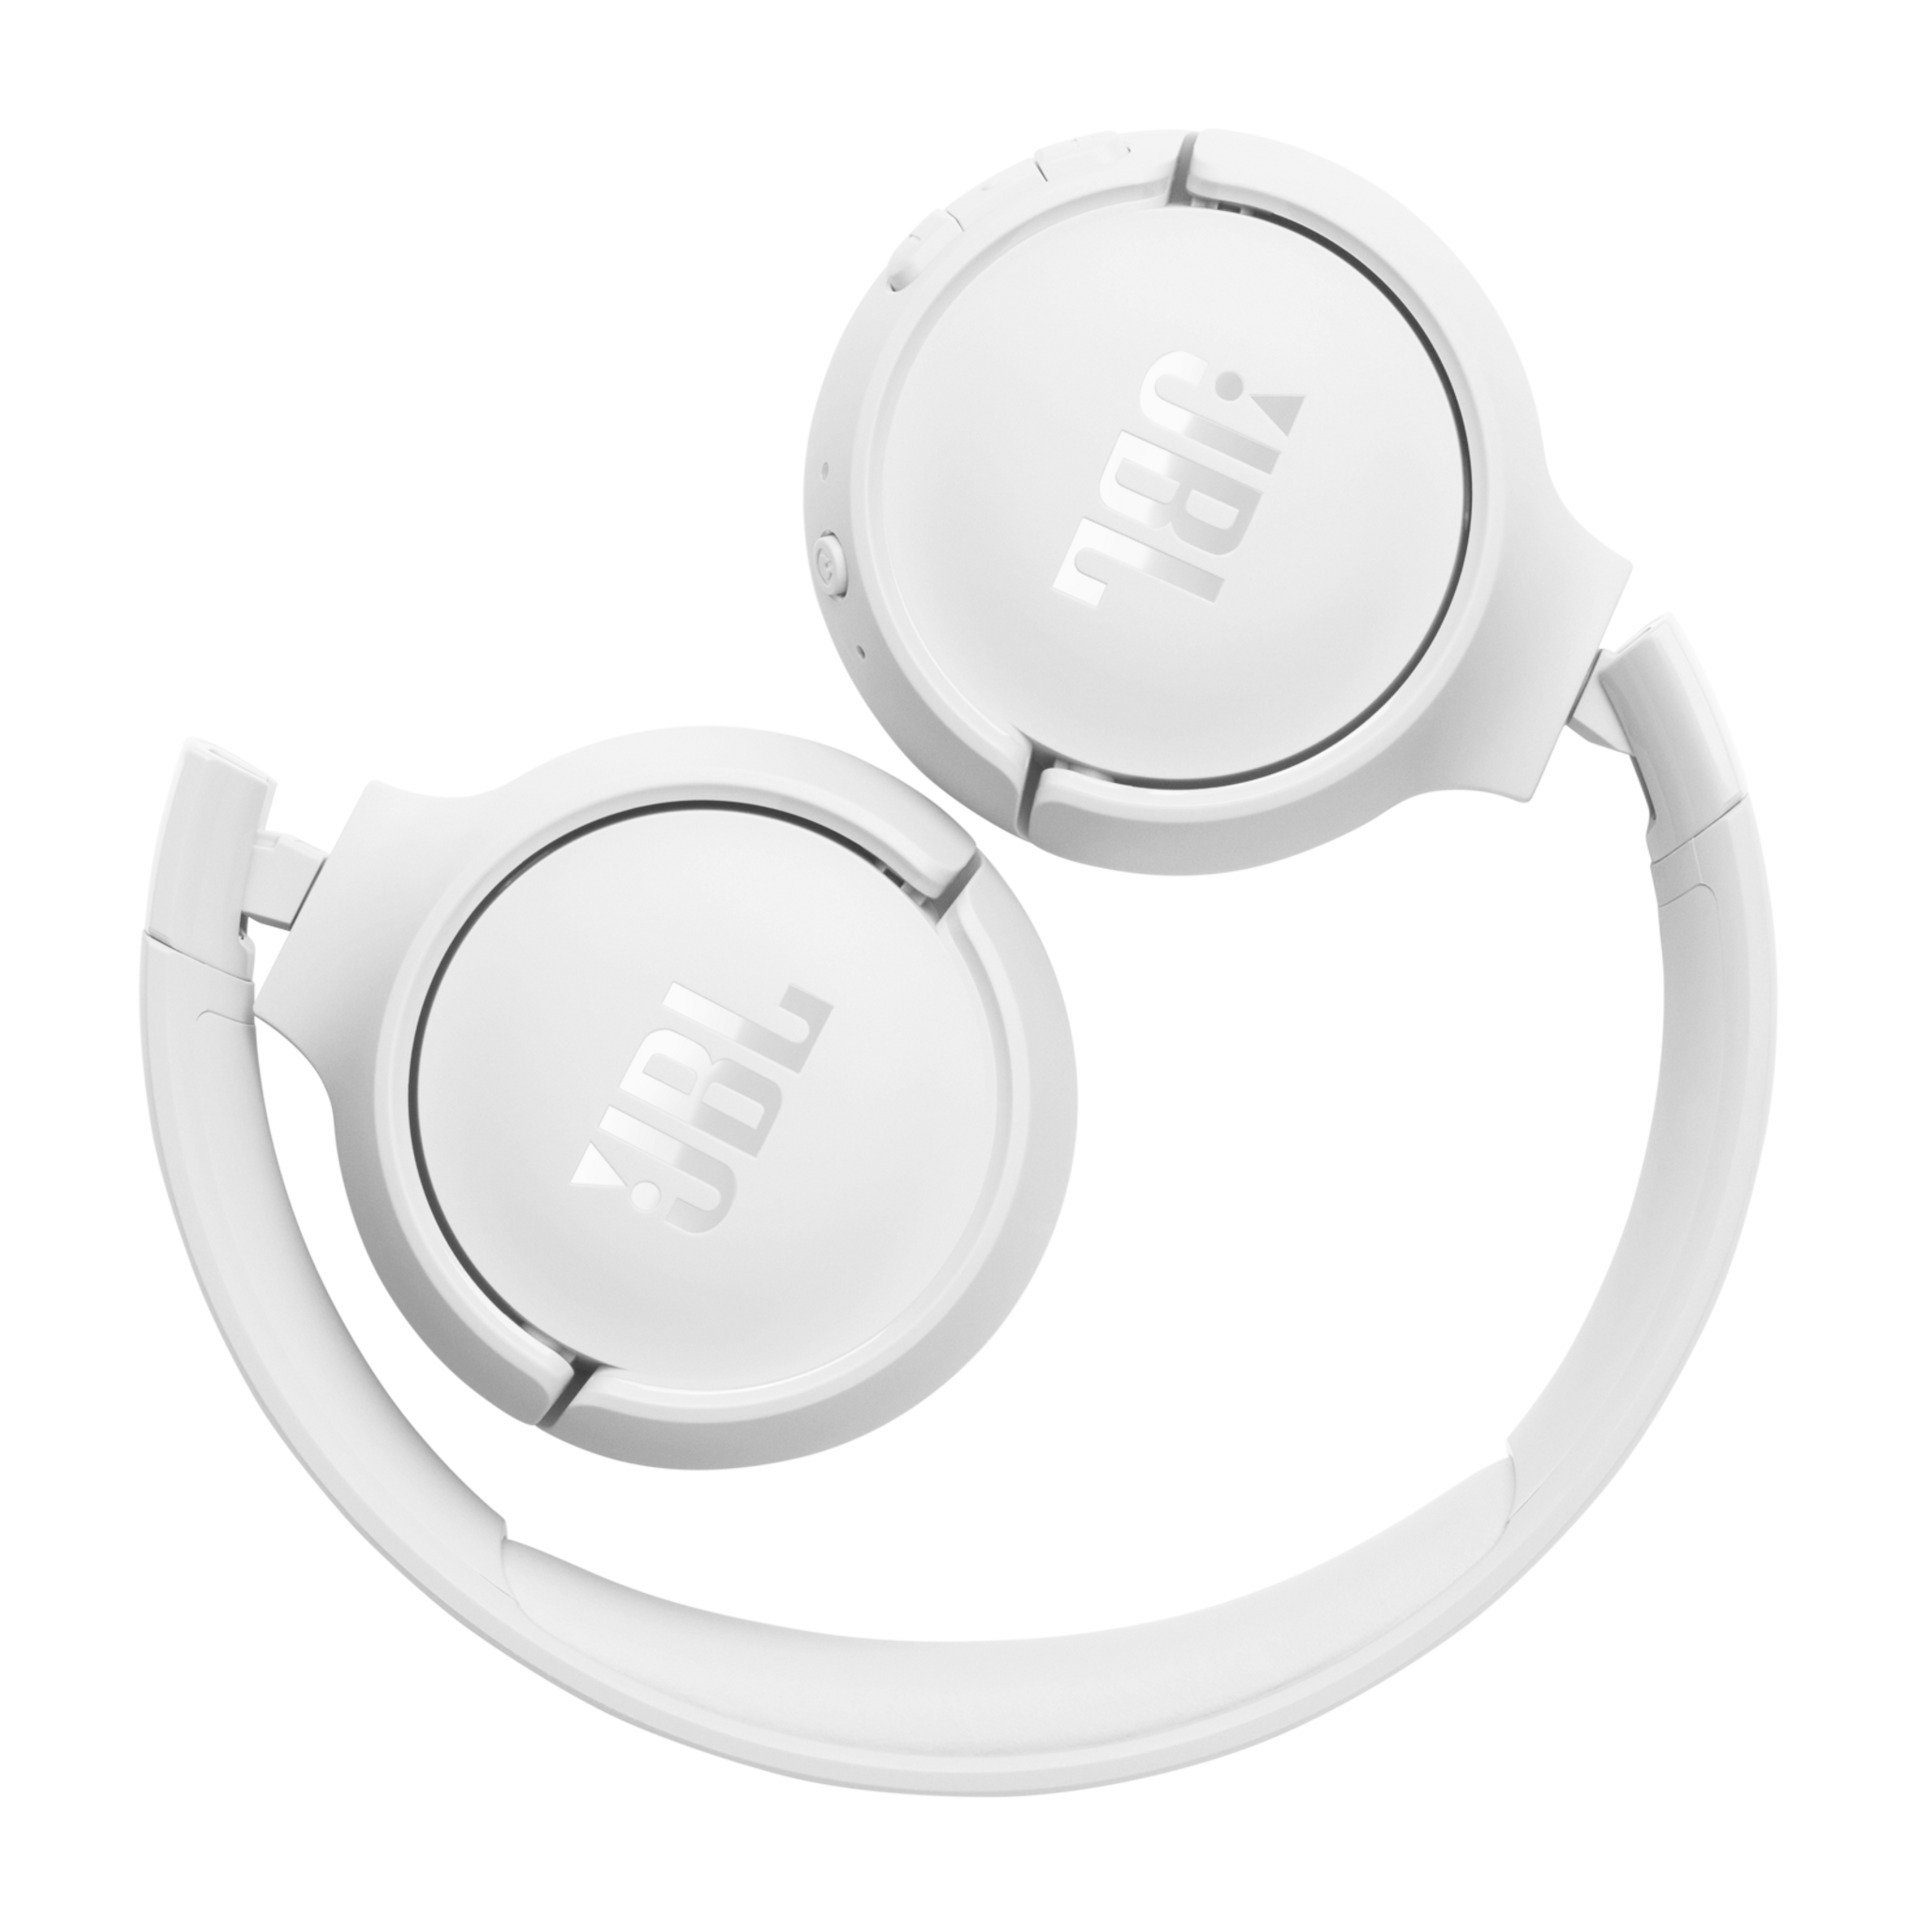 JBL Weiß 520 Over-Ear-Kopfhörer Tune BT